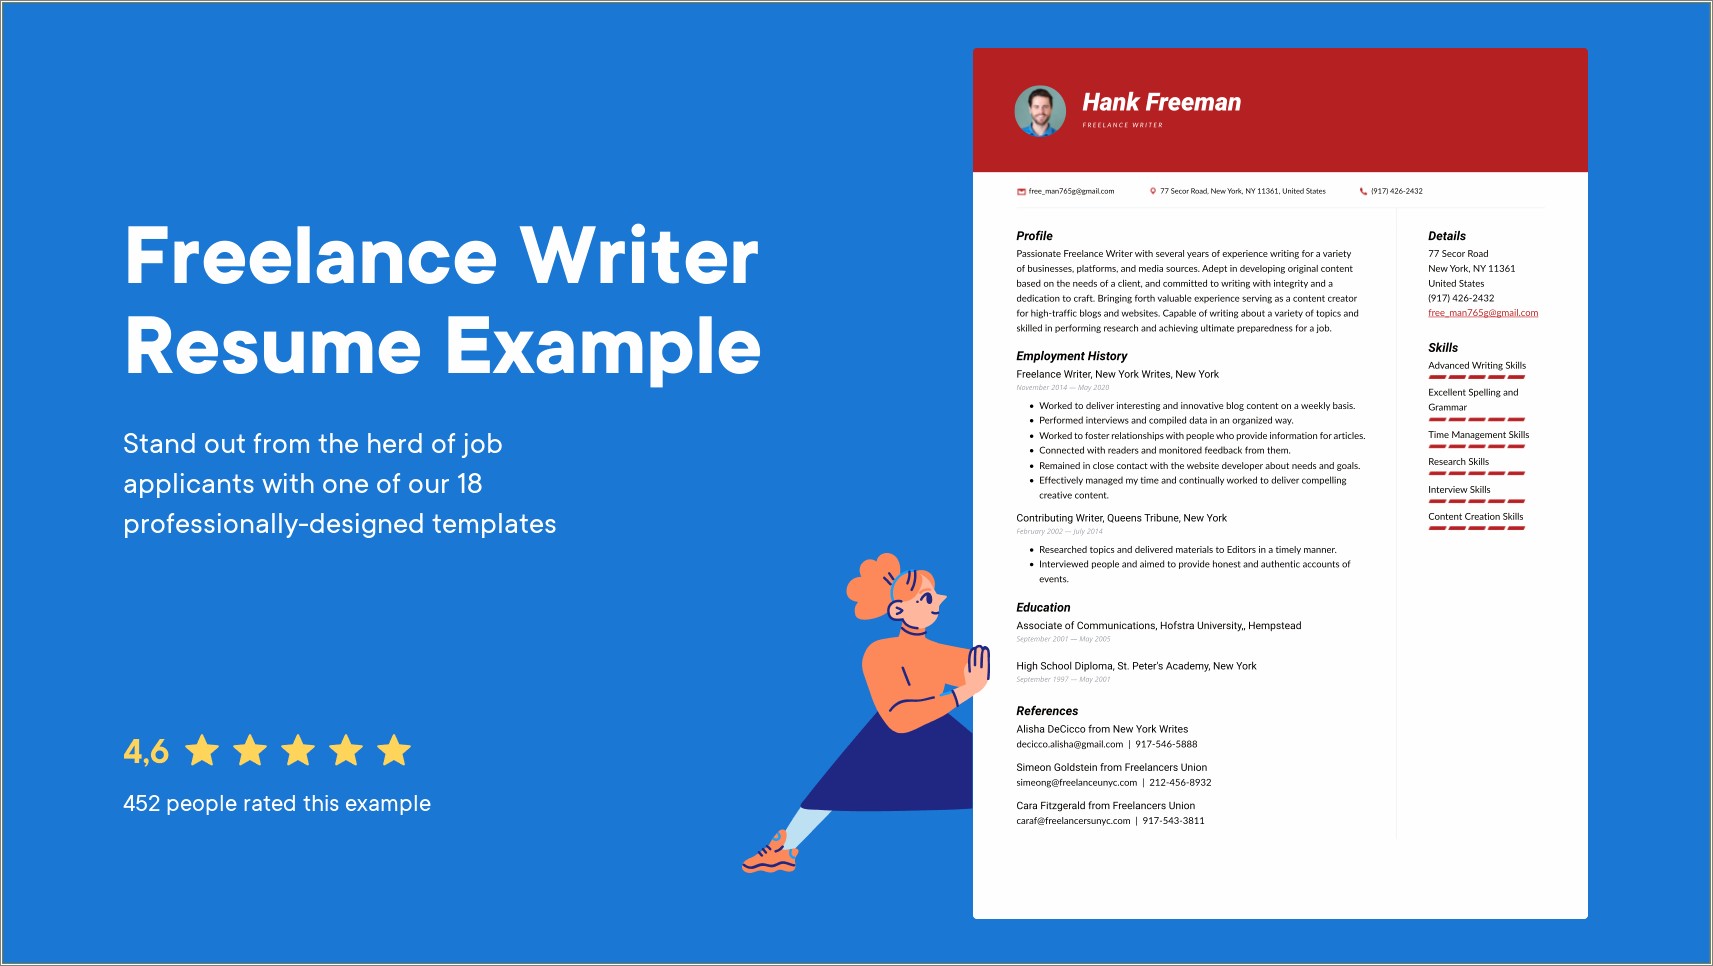 Freelance Writer Job Description For Resume